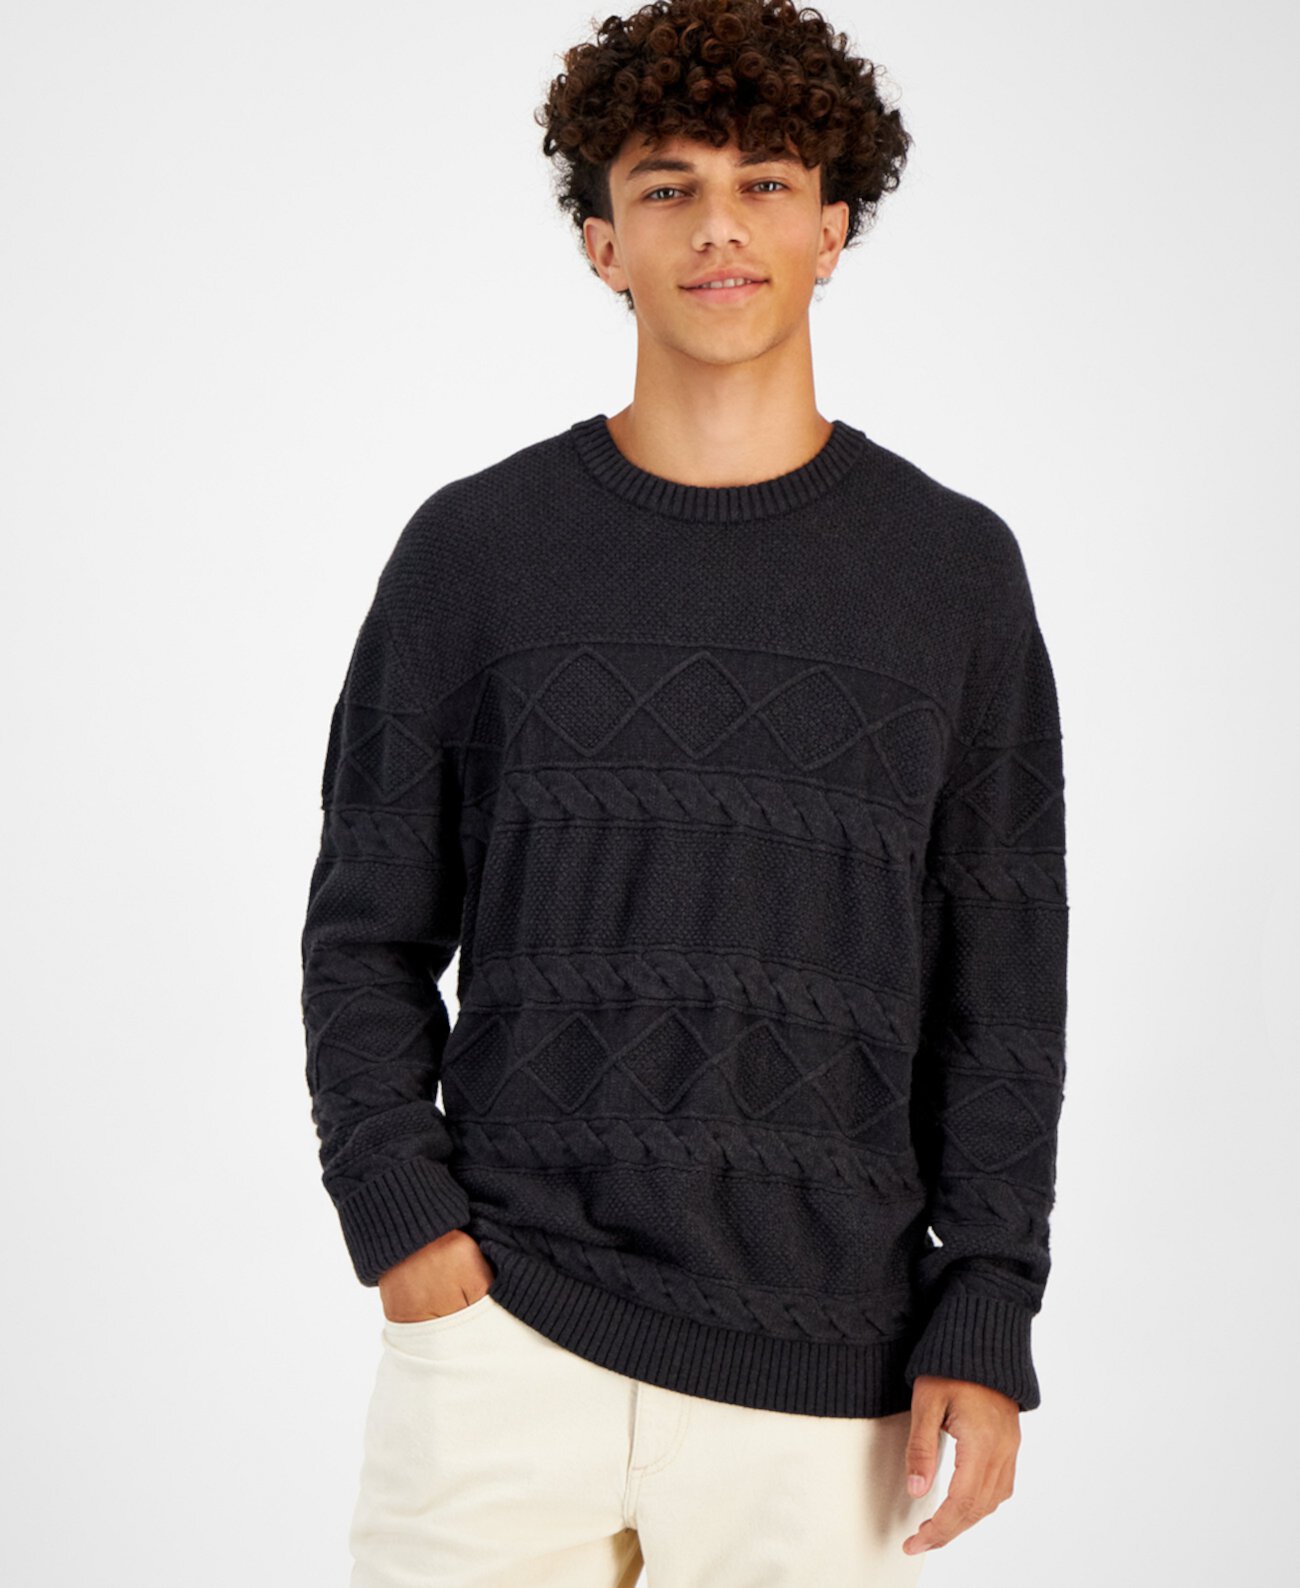 Мужской свитер косой вязки с круглым вырезом, созданный для Macy's Sun & Stone